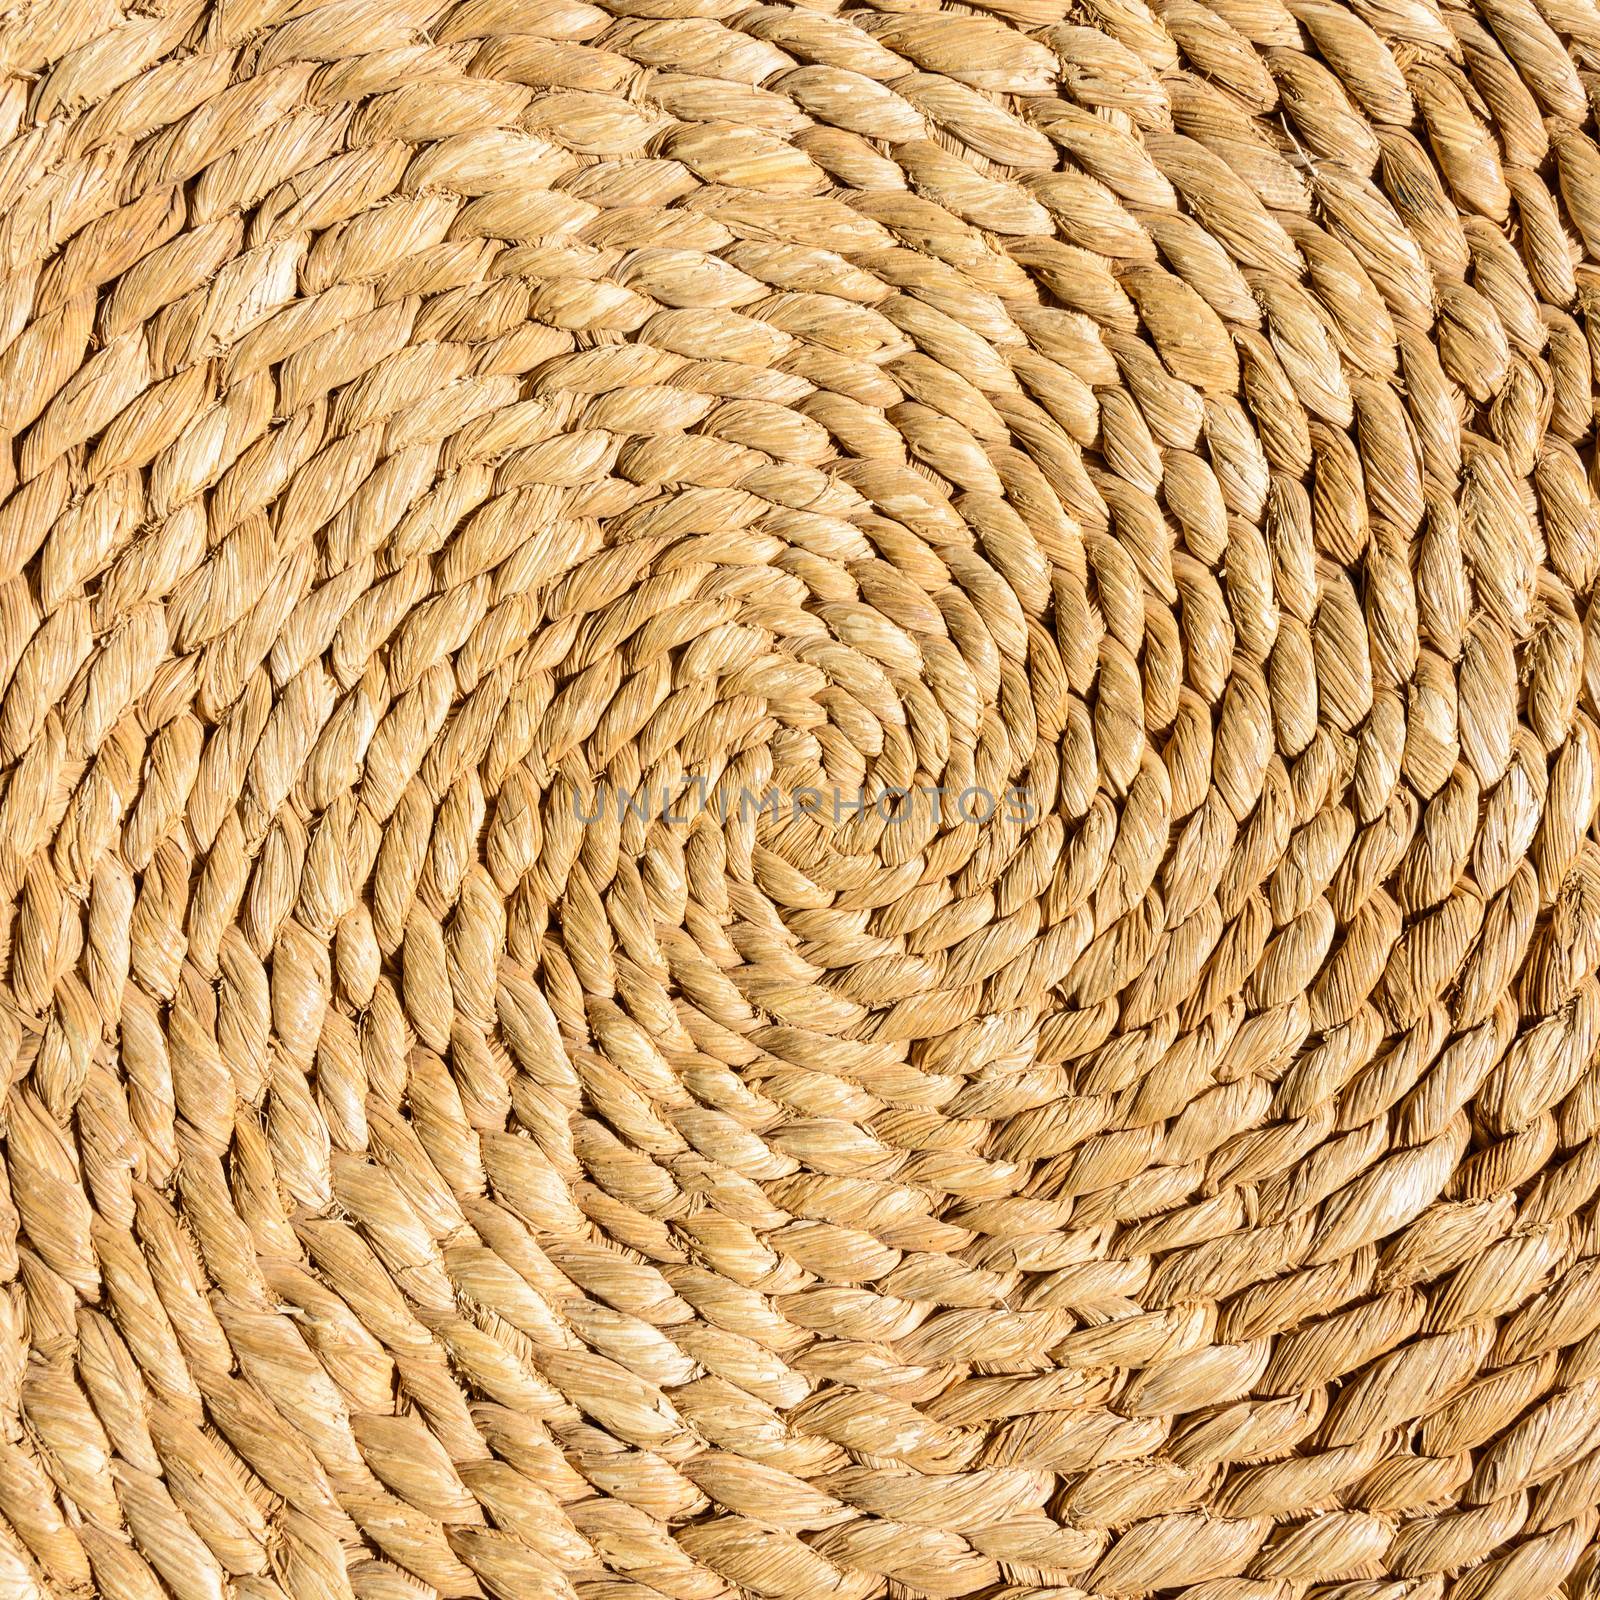 Rattan circular texture